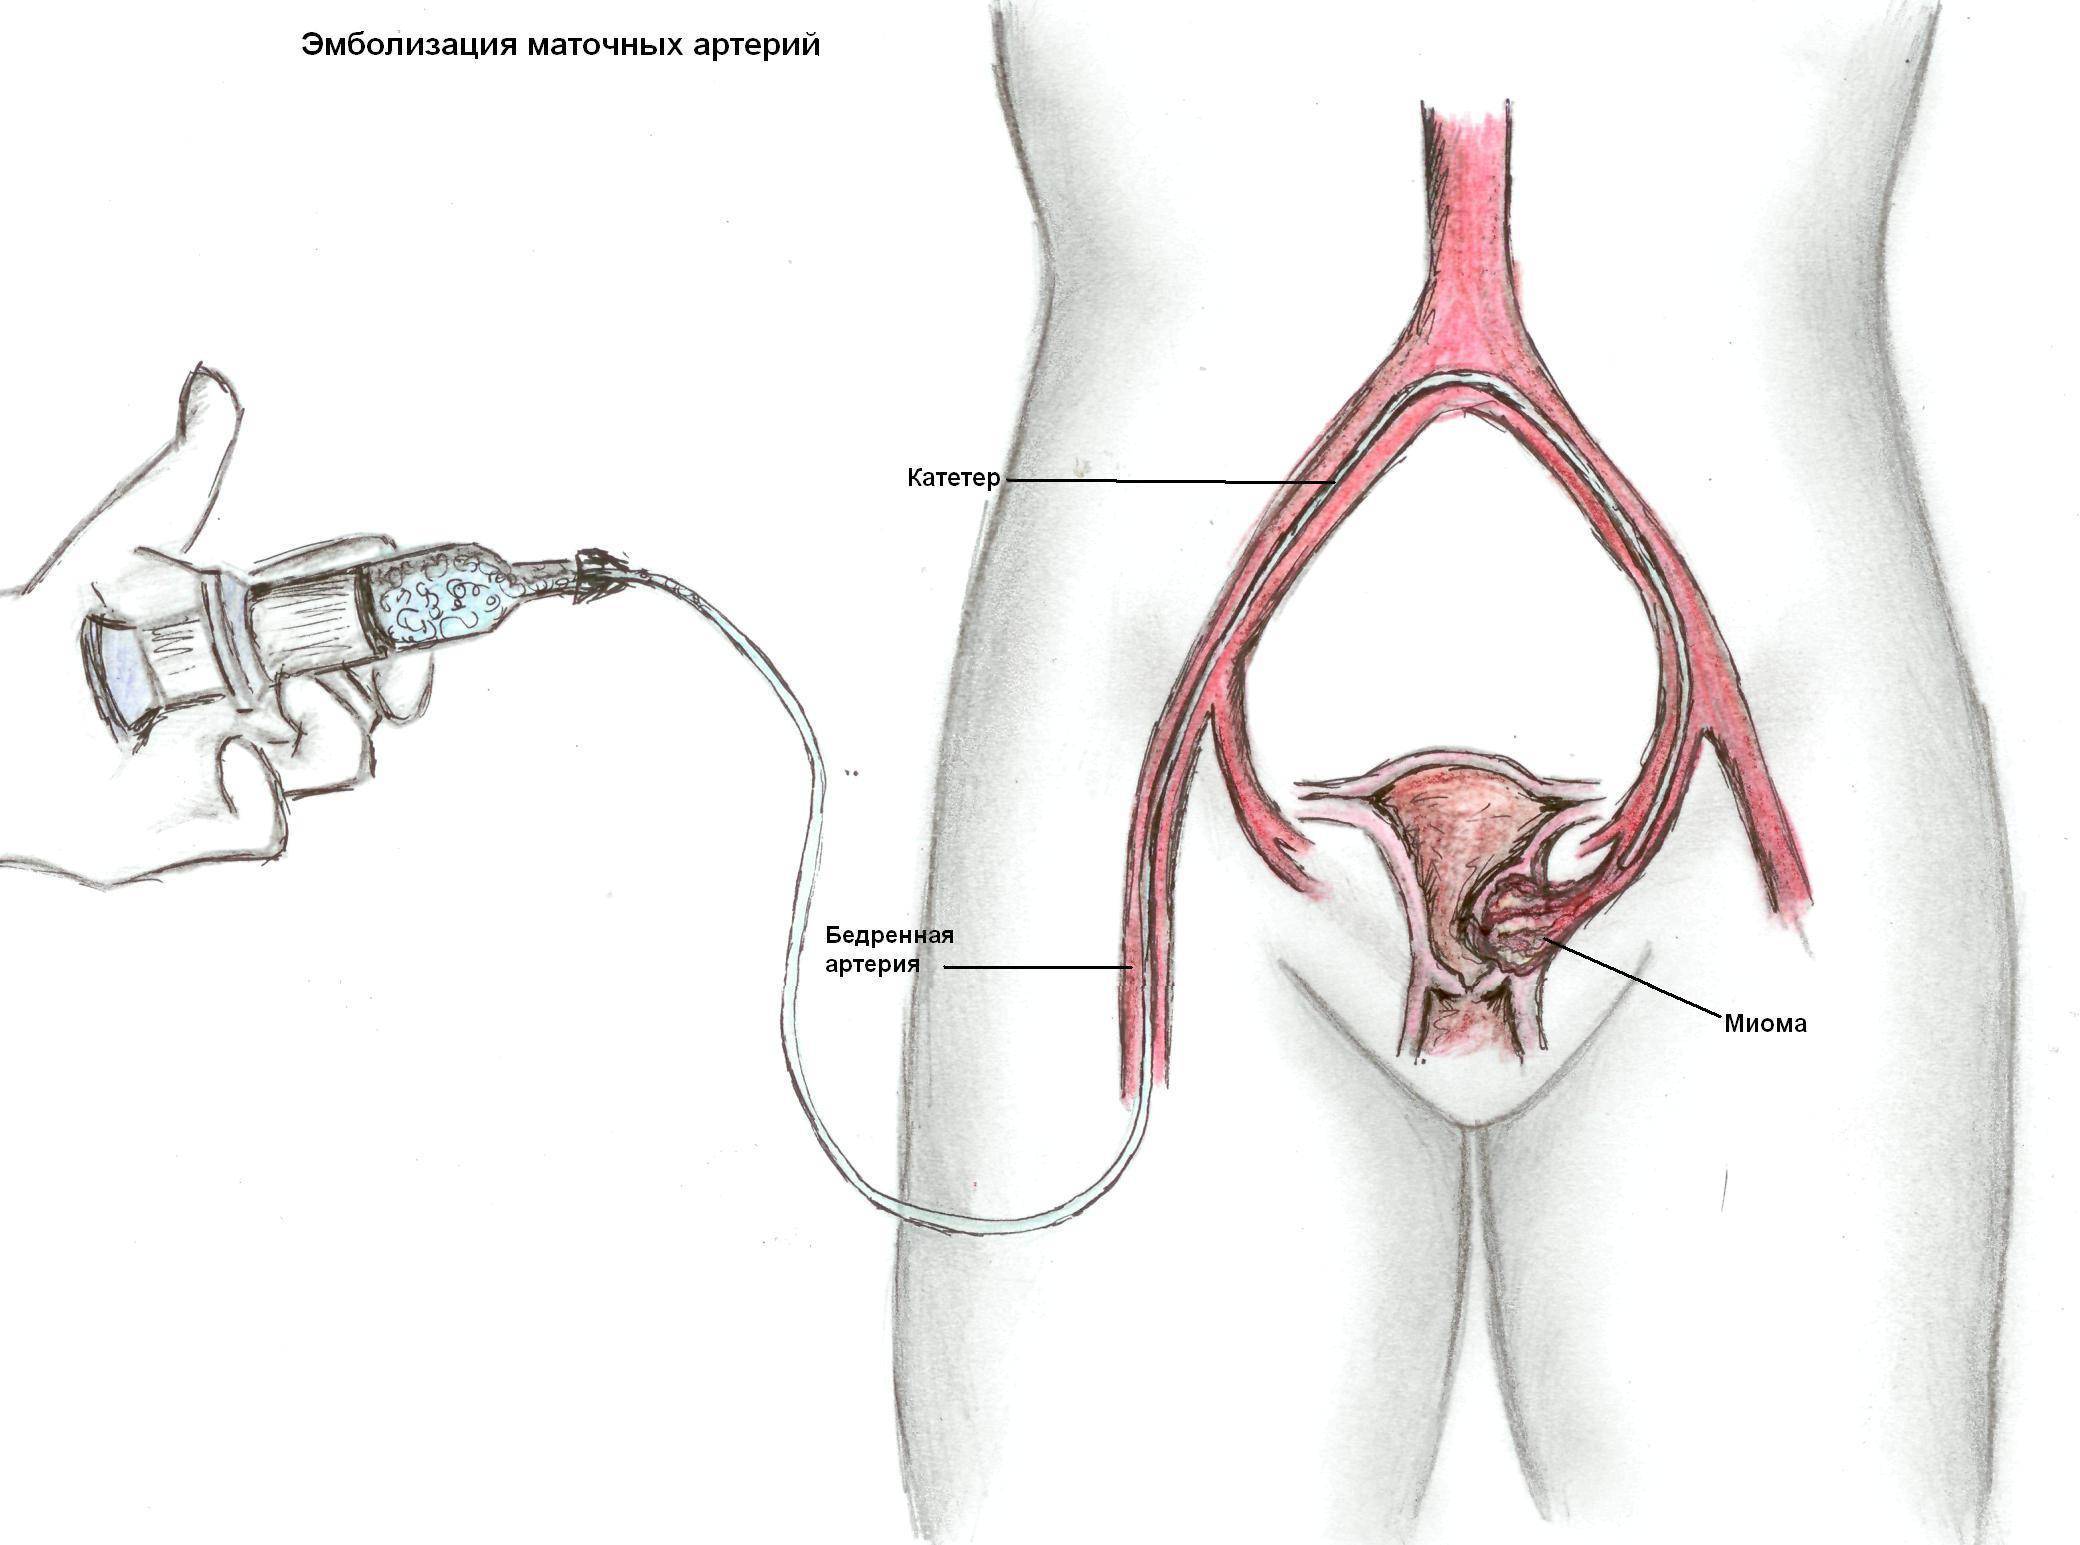 Эмболизация маточных артерий (эма): малоинвазивная операция при миоме